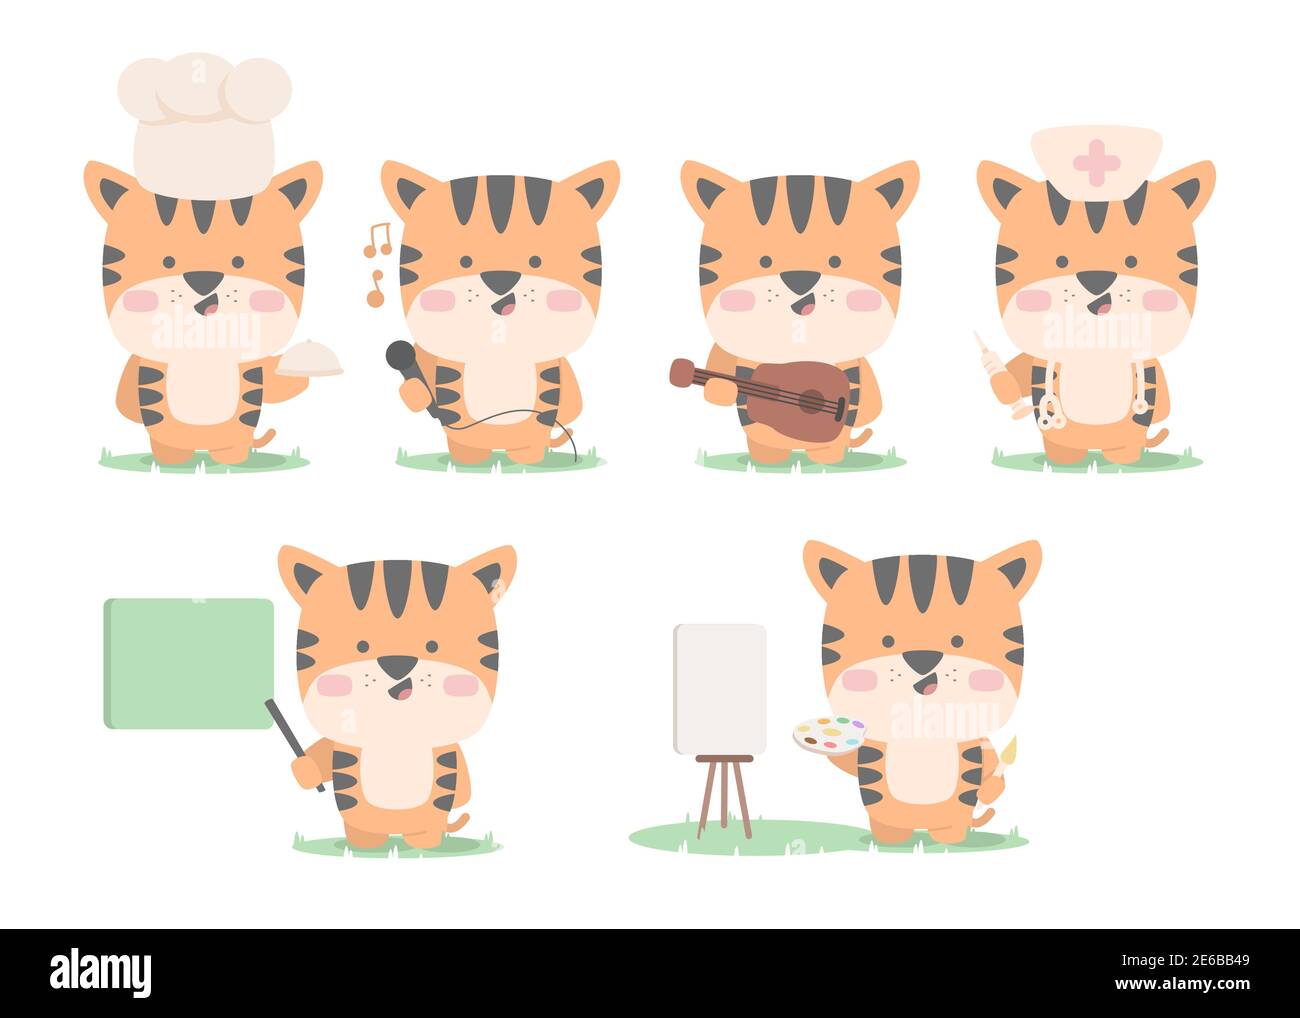 jeu de personnages tiger collection mascotte mignon animal chef chanteur guitare peintre professeur de docteur avec le style de dessin animé plat Illustration de Vecteur